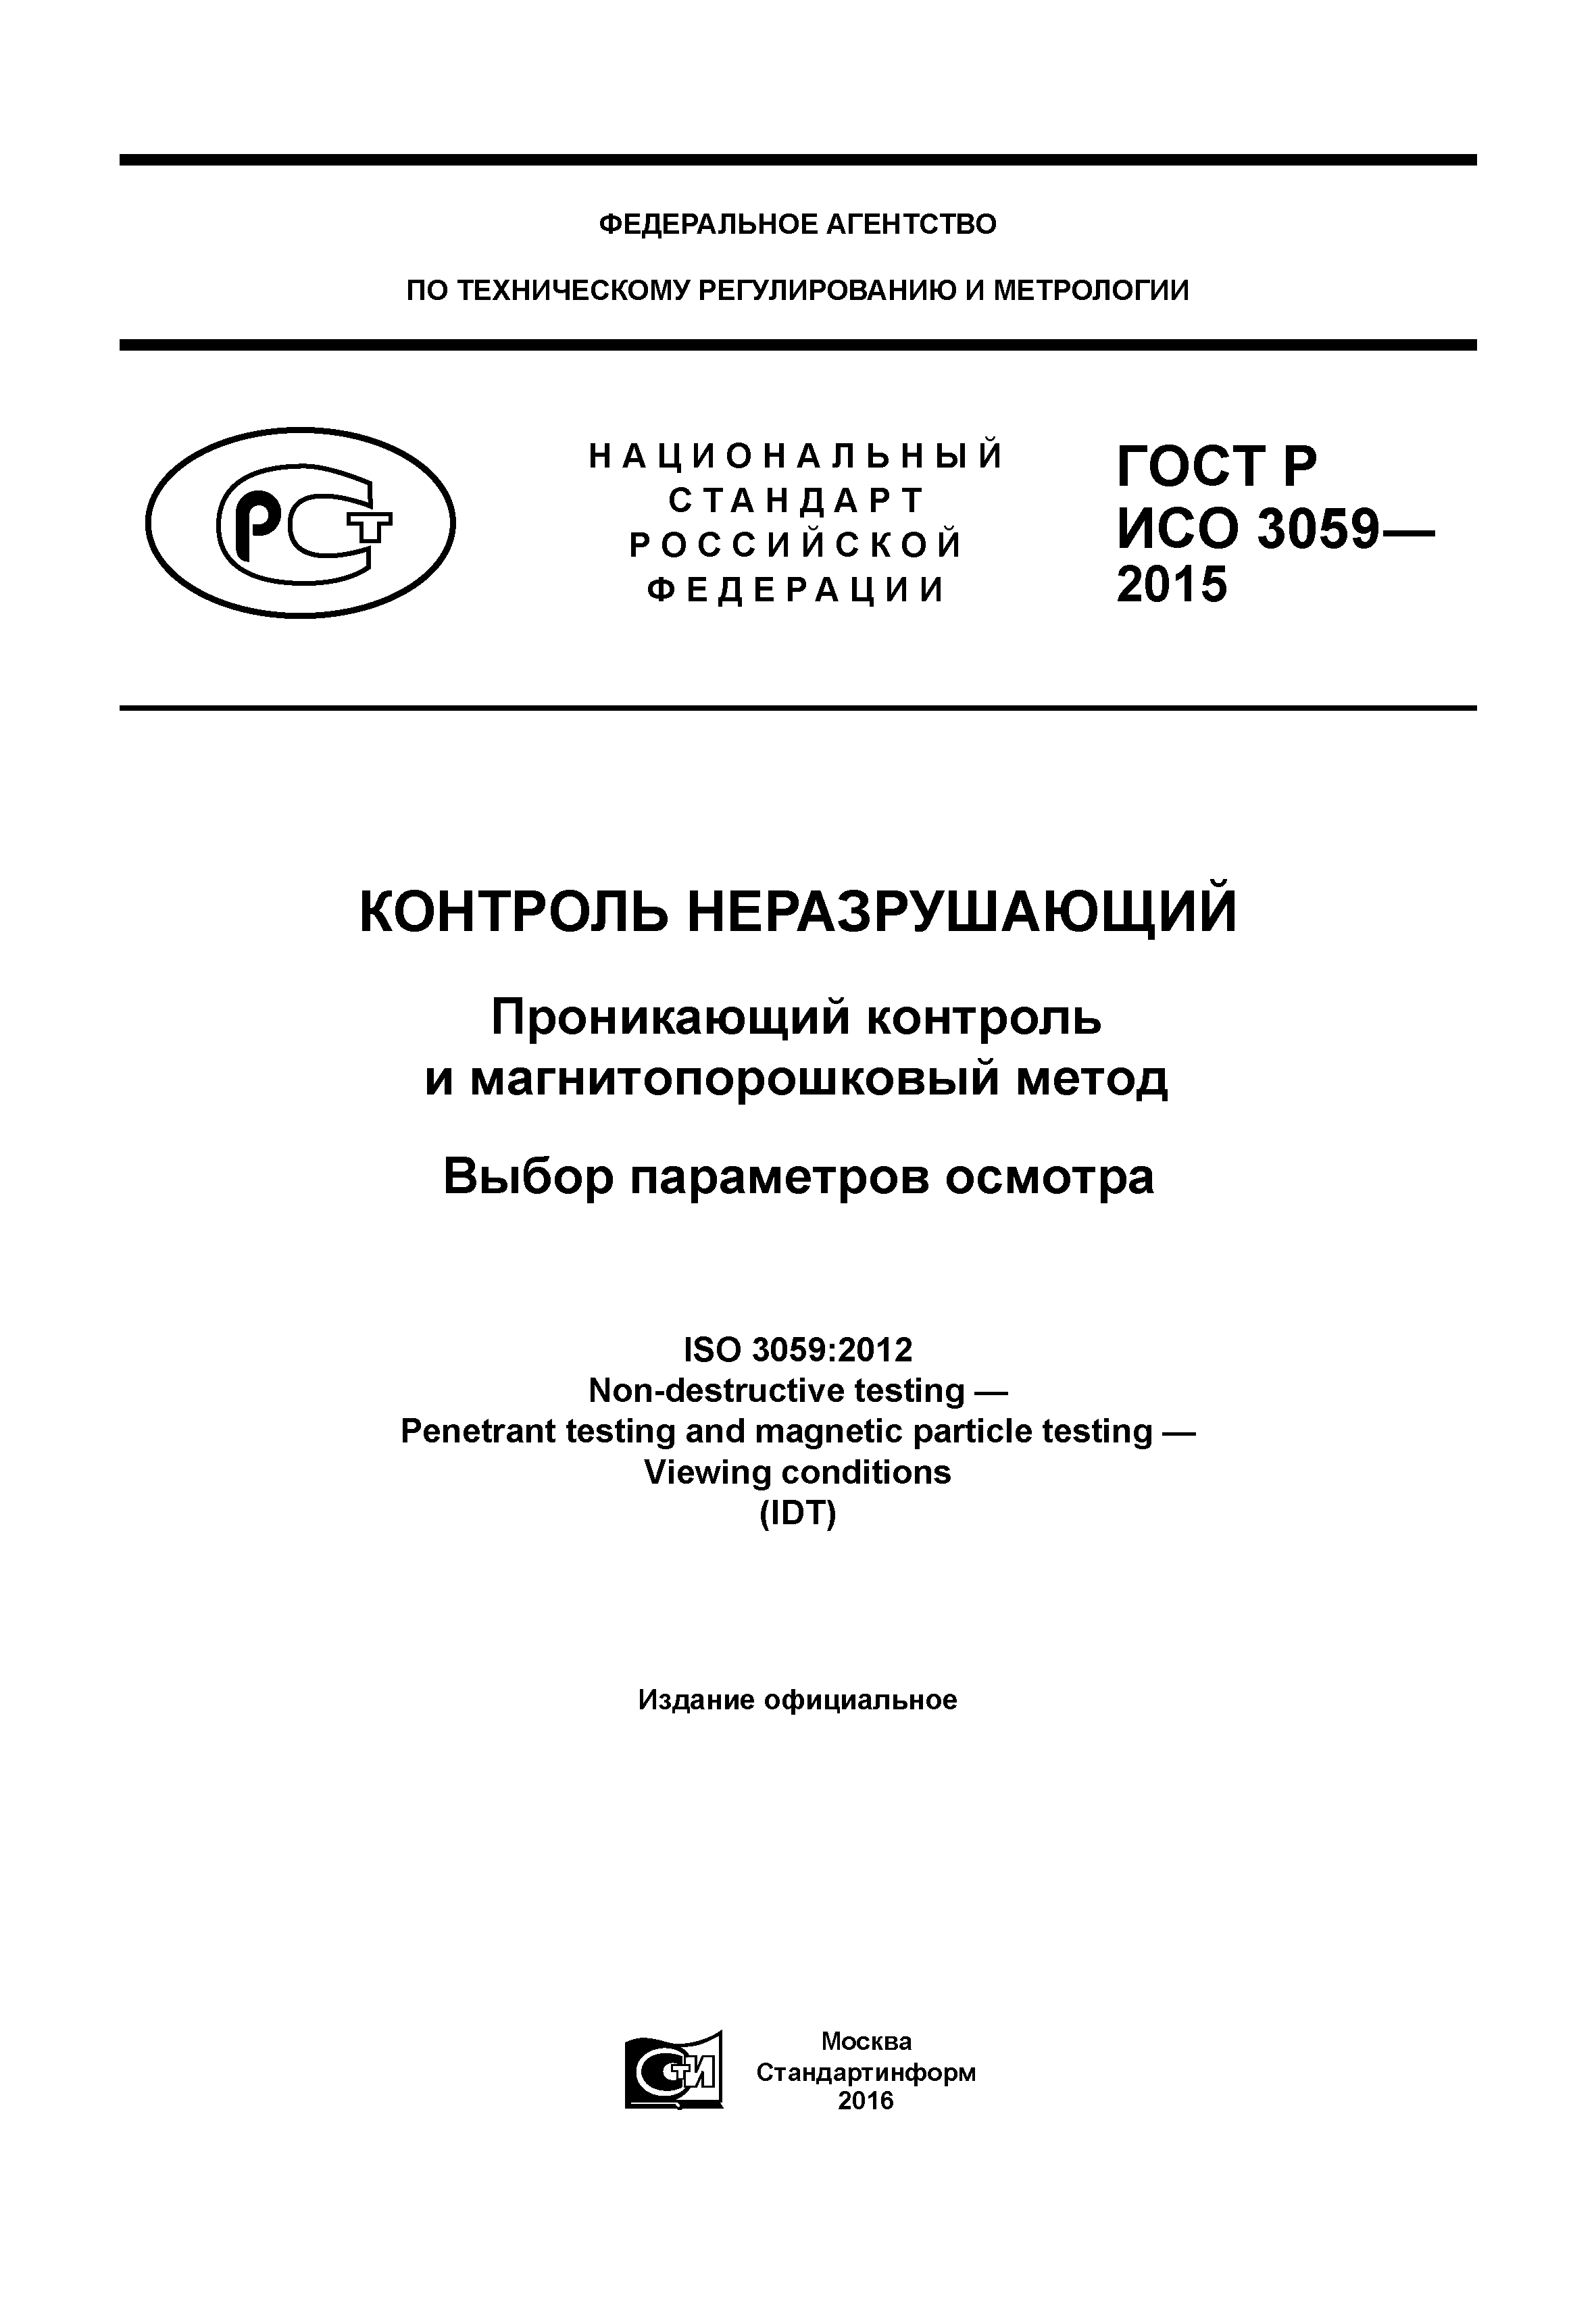 ГОСТ Р ИСО 3059-2015